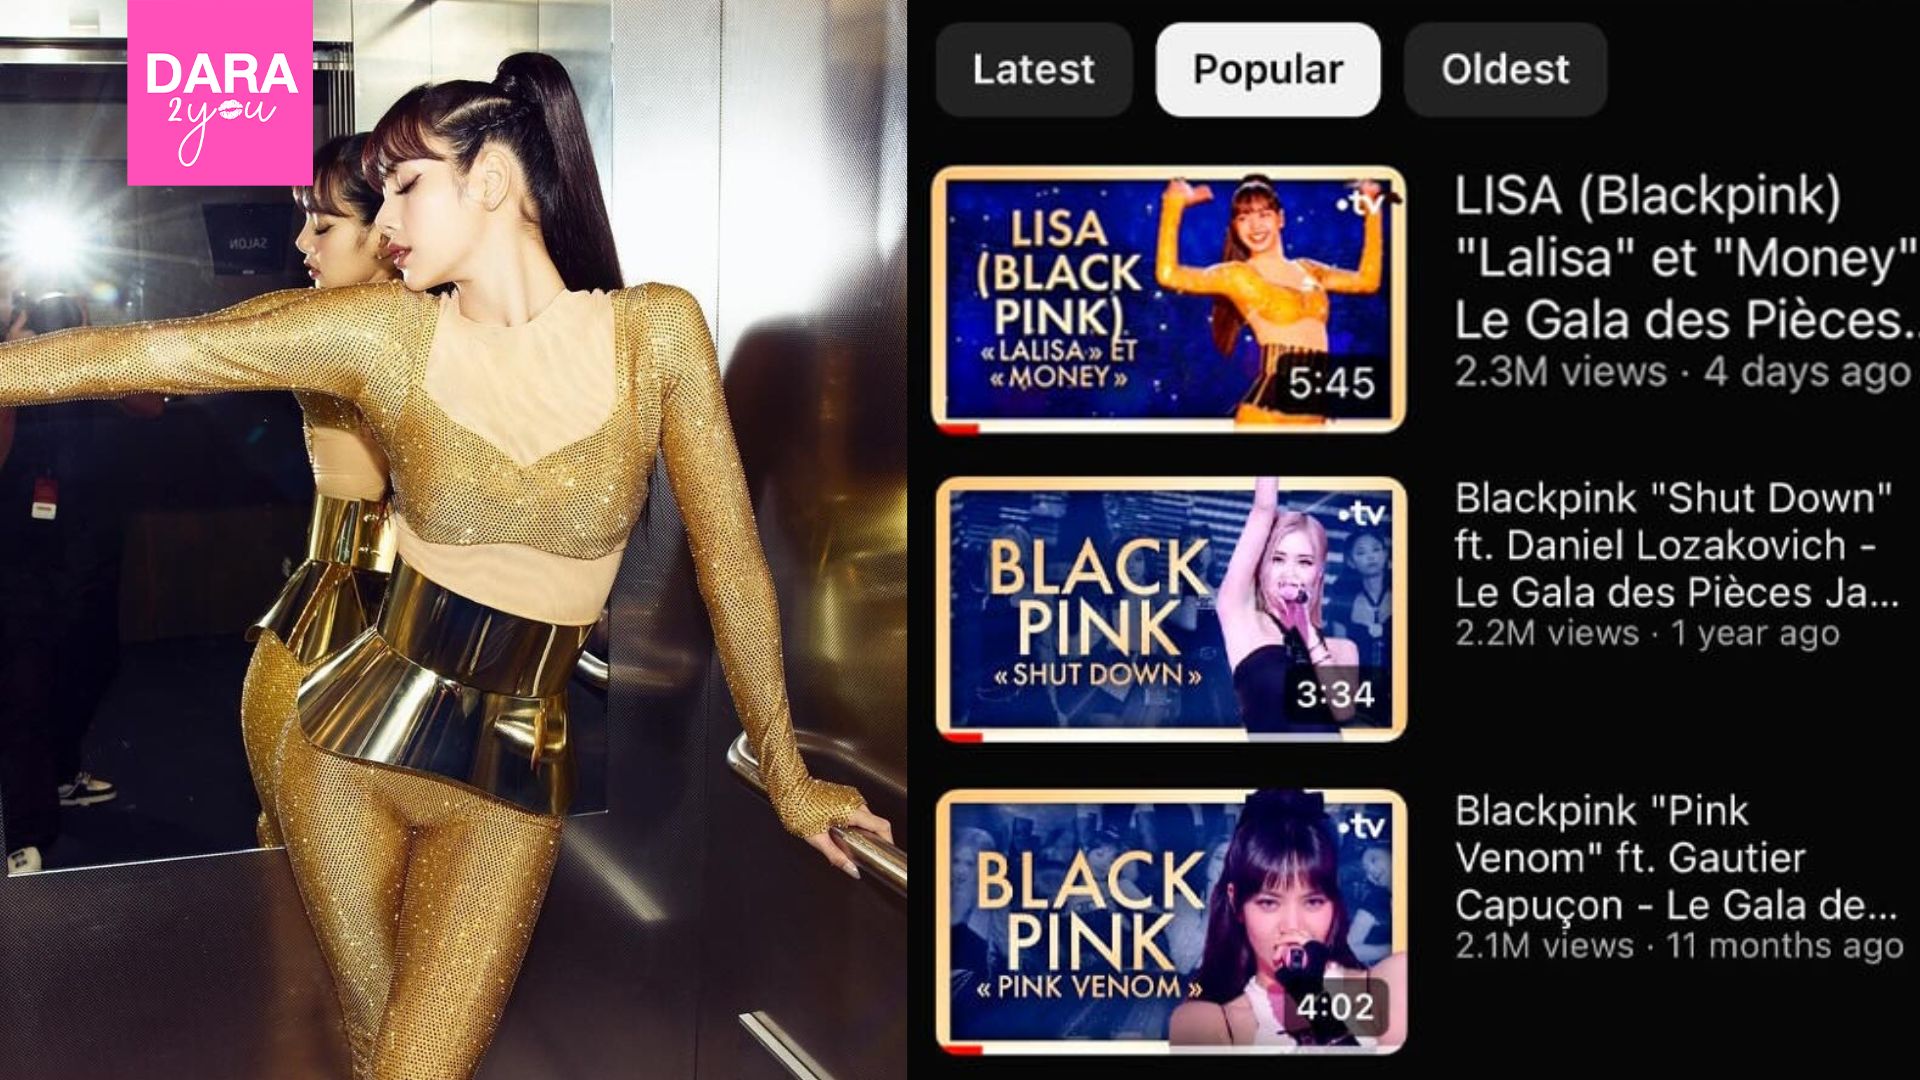 คลิปการแสดงของ “ลิซ่า BLACKPINK” มียอดวิวสูงที่สุดในช่อง France TV !